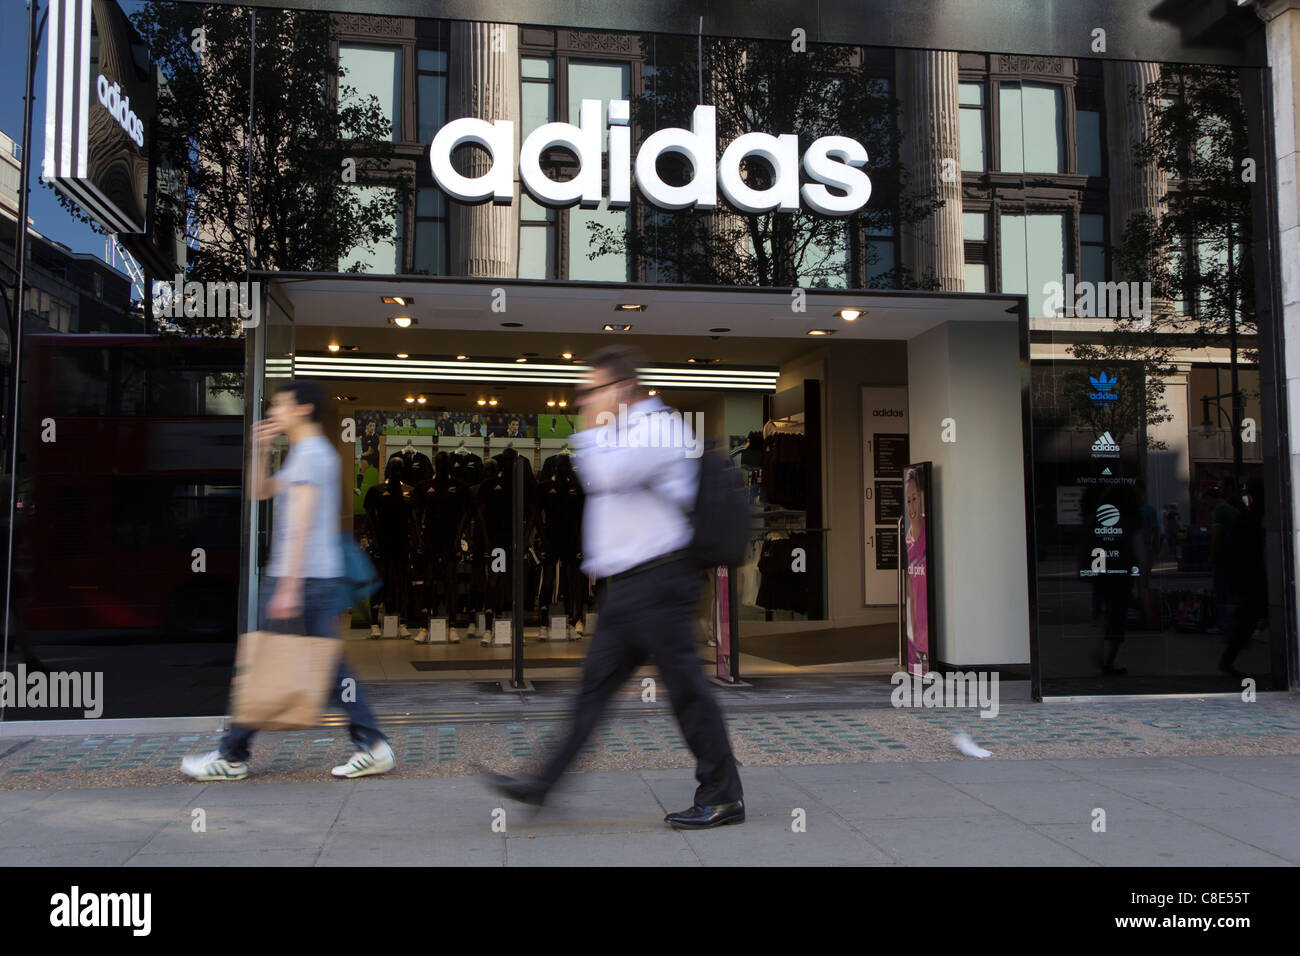 Der Adidas Store auf der Oxford Street, der am meisten frequentierte Einkaufsstraße in London. Stockfoto